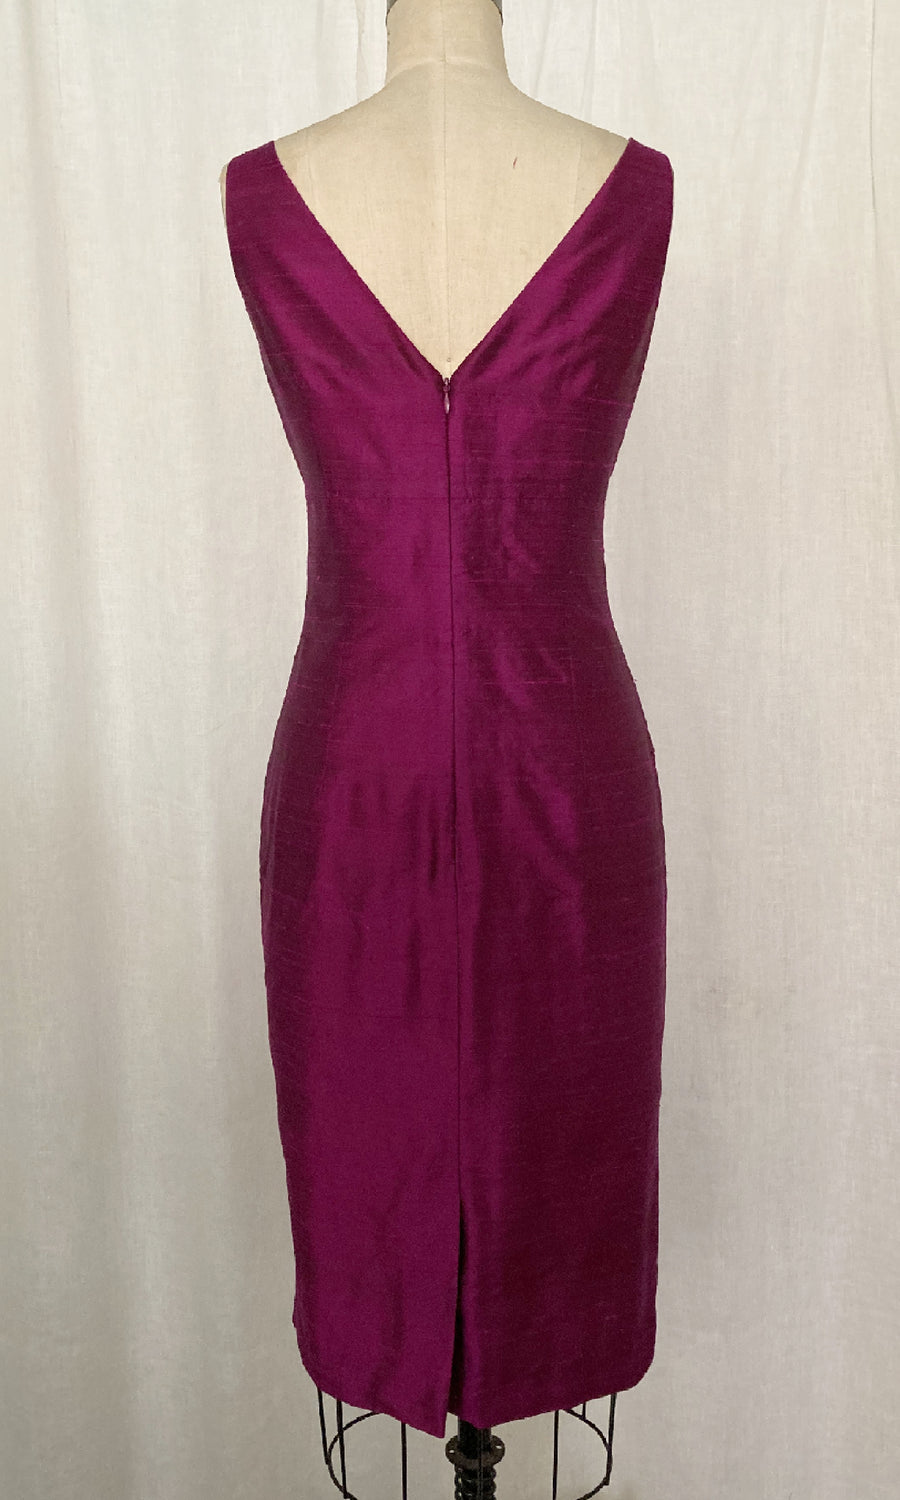 Sangria Classic V-neck Sheath Dress, size Medium